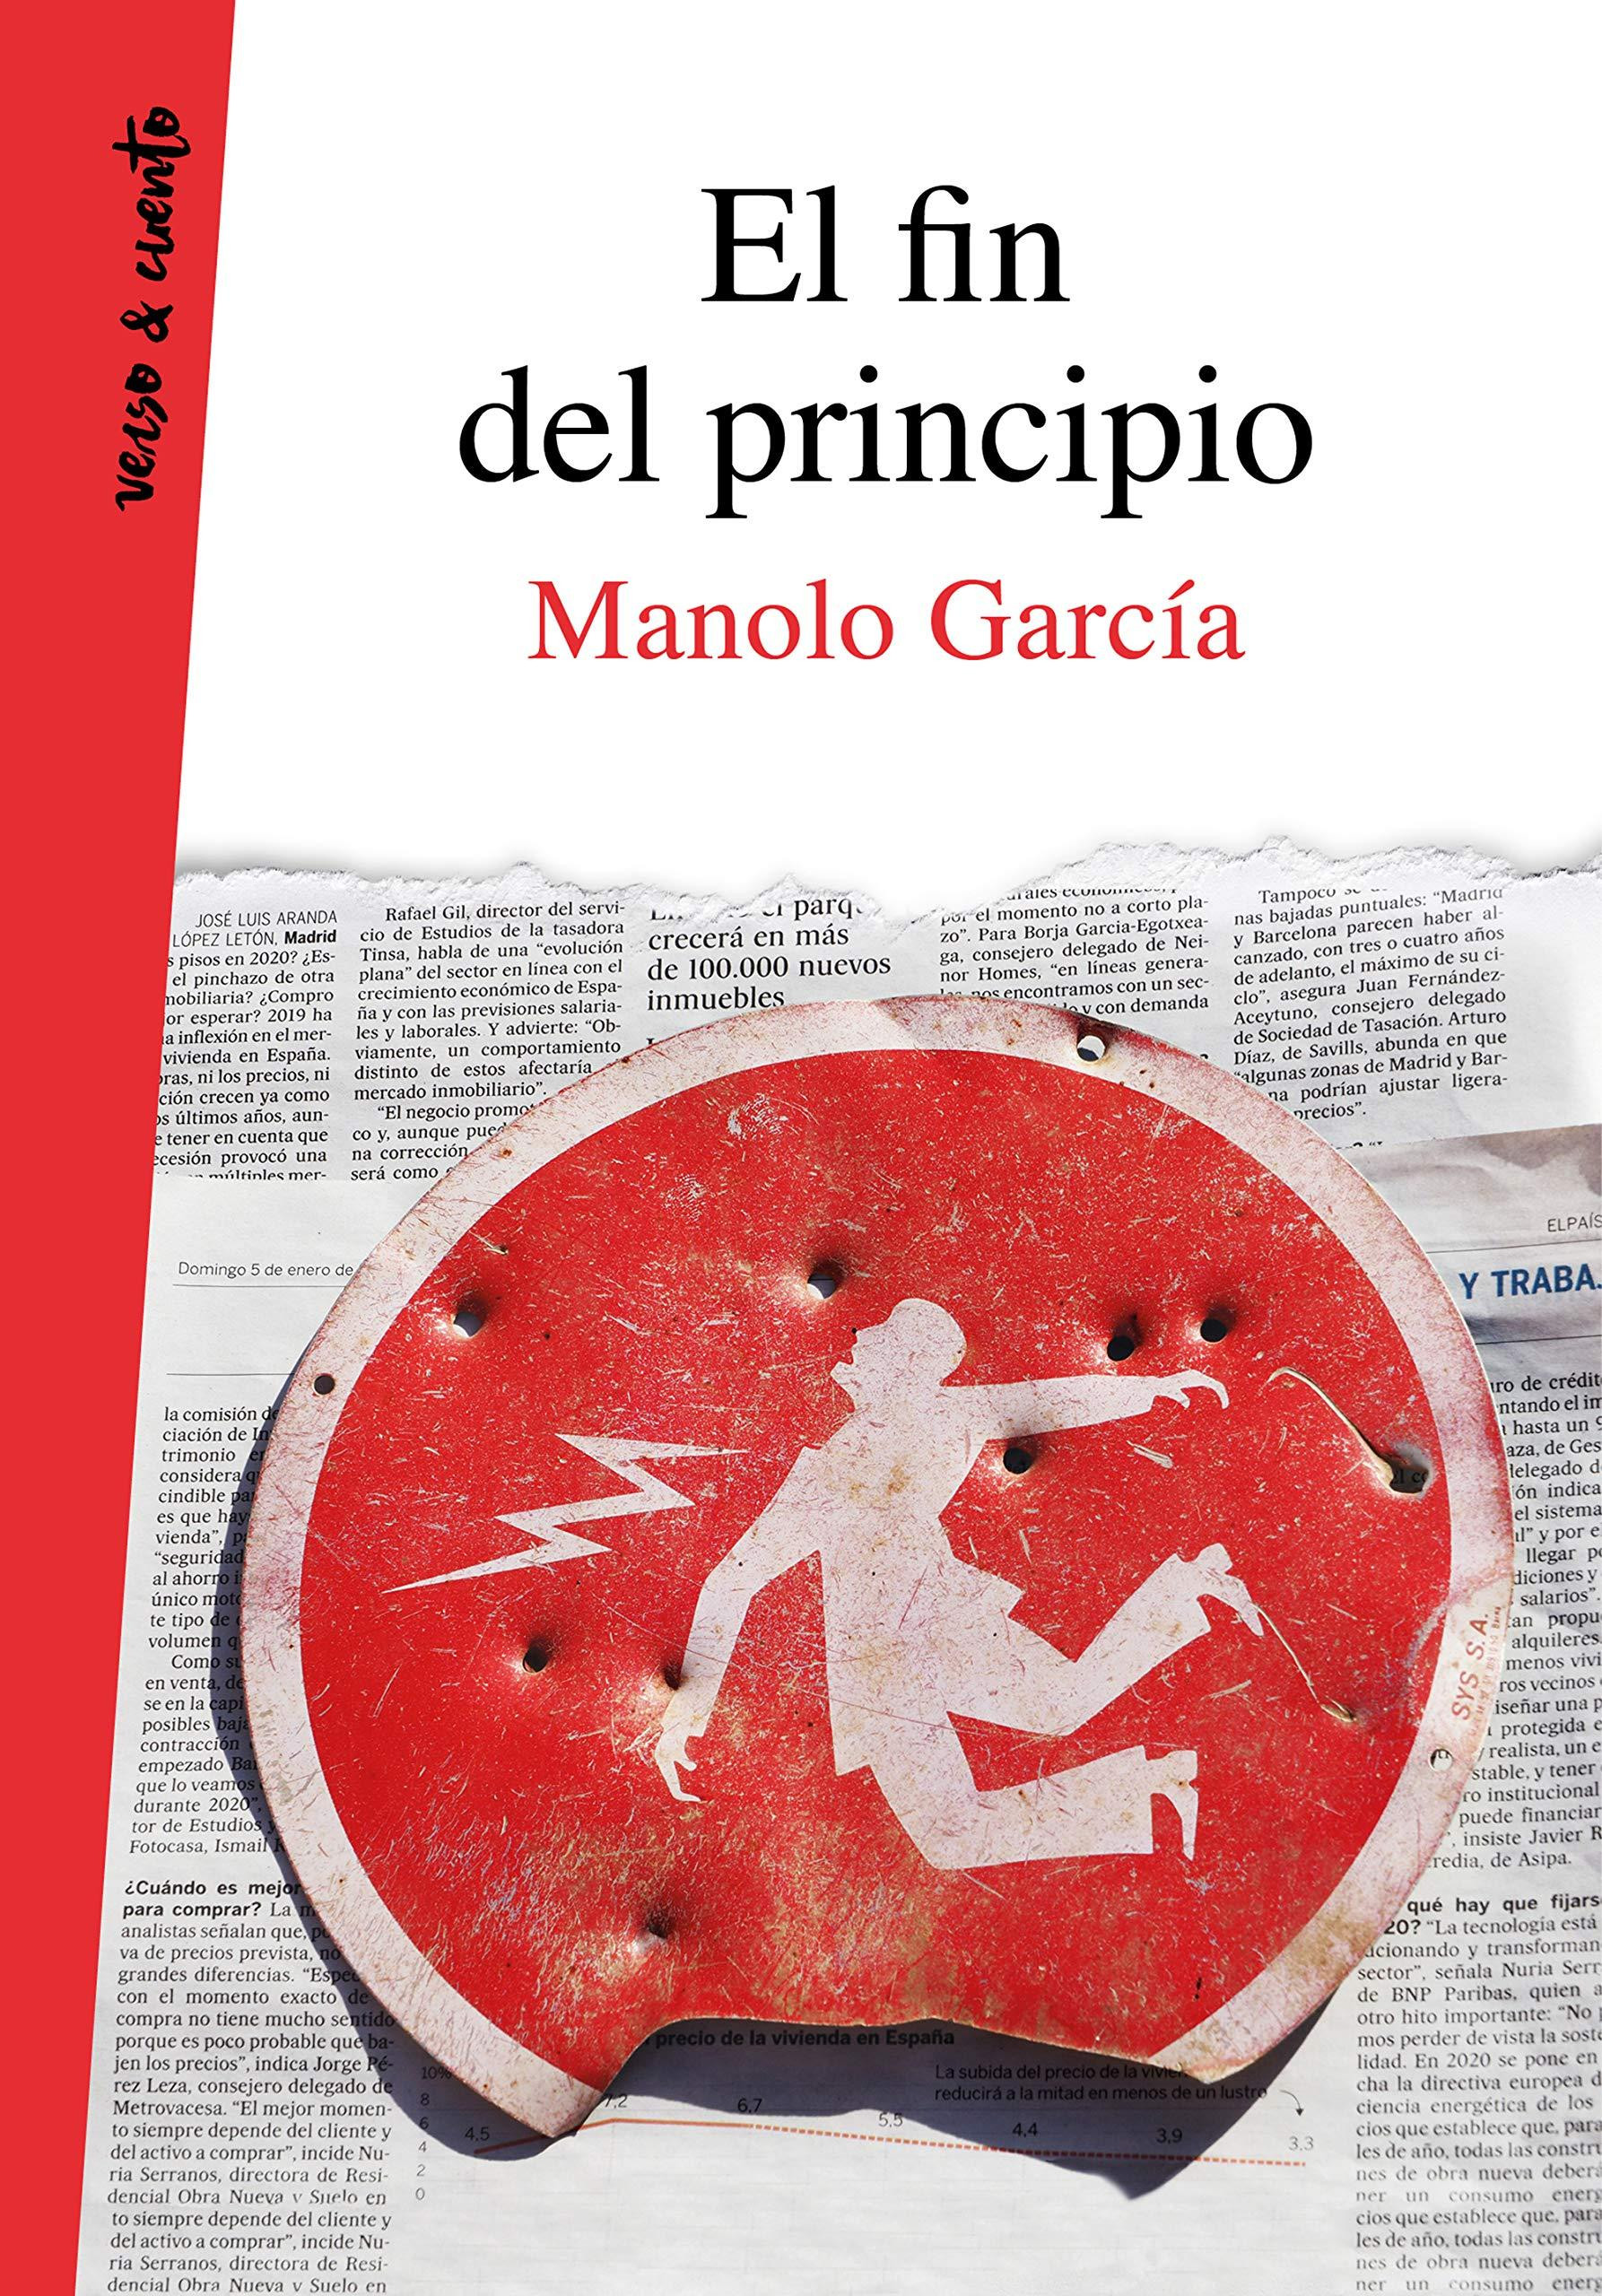 La portada del libro de poemas de Manolo García